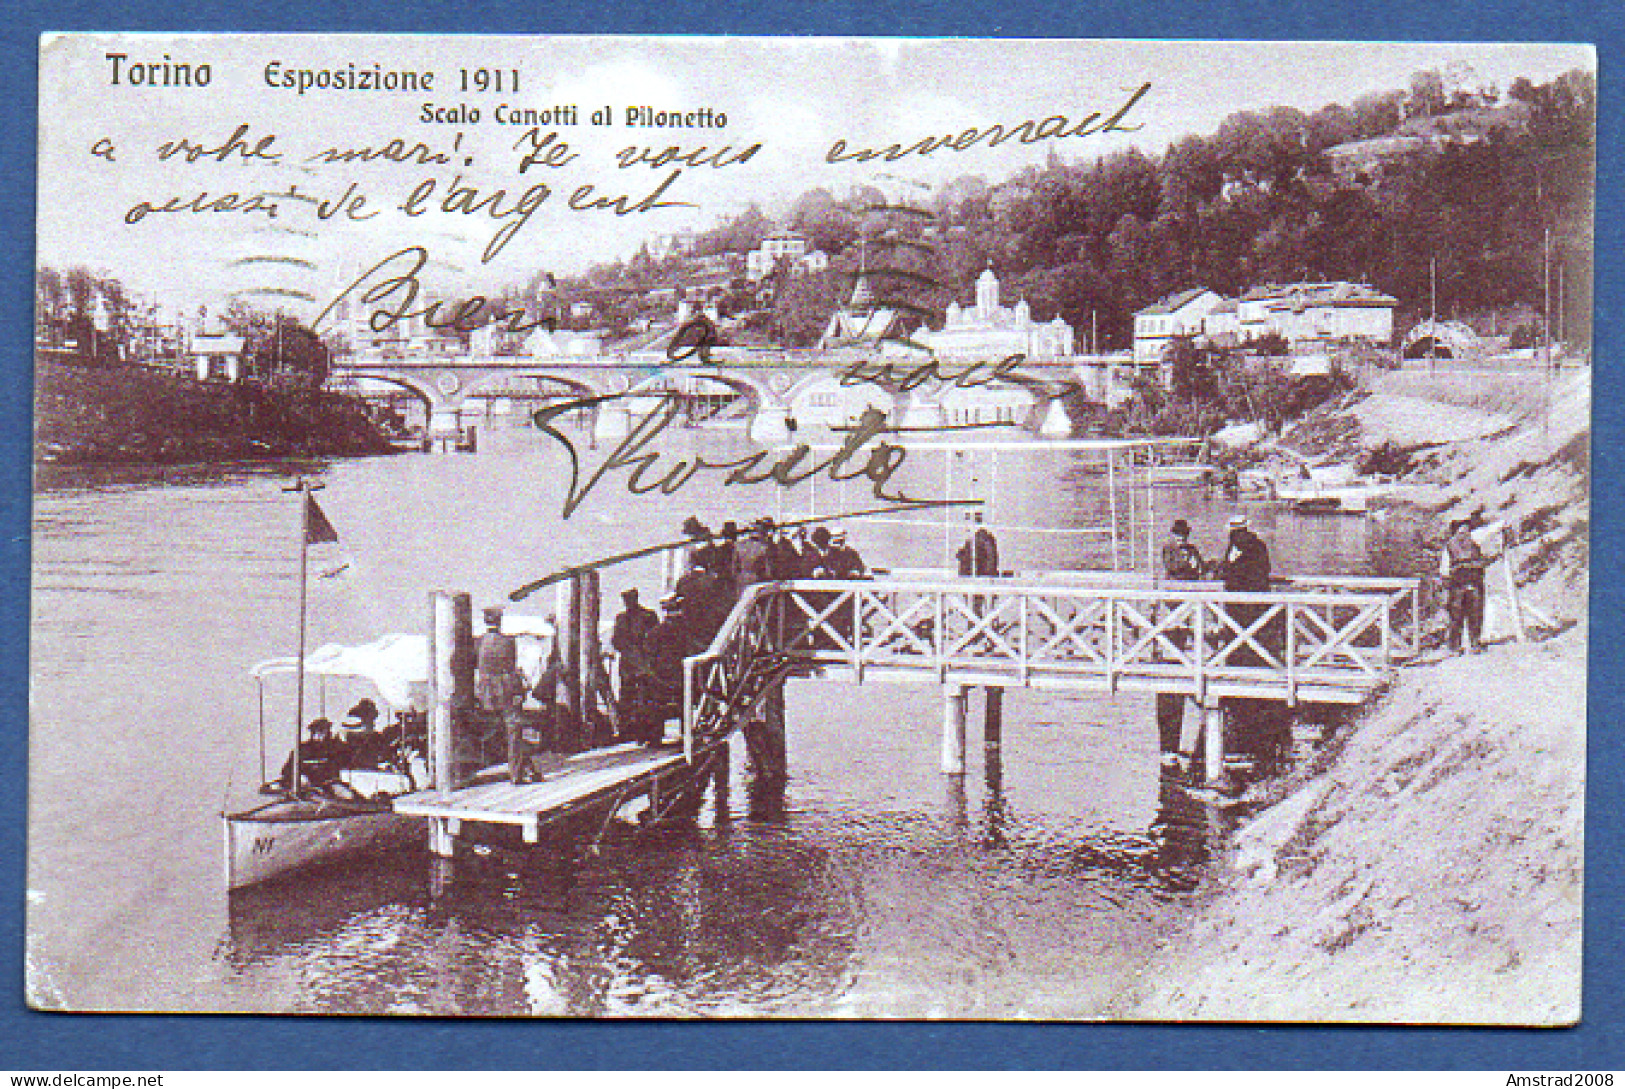 TORINO - ESPOSIZIONE 1911 - SCALO CANOTTI AL PILONETTO   - ITALIE - Mostre, Esposizioni